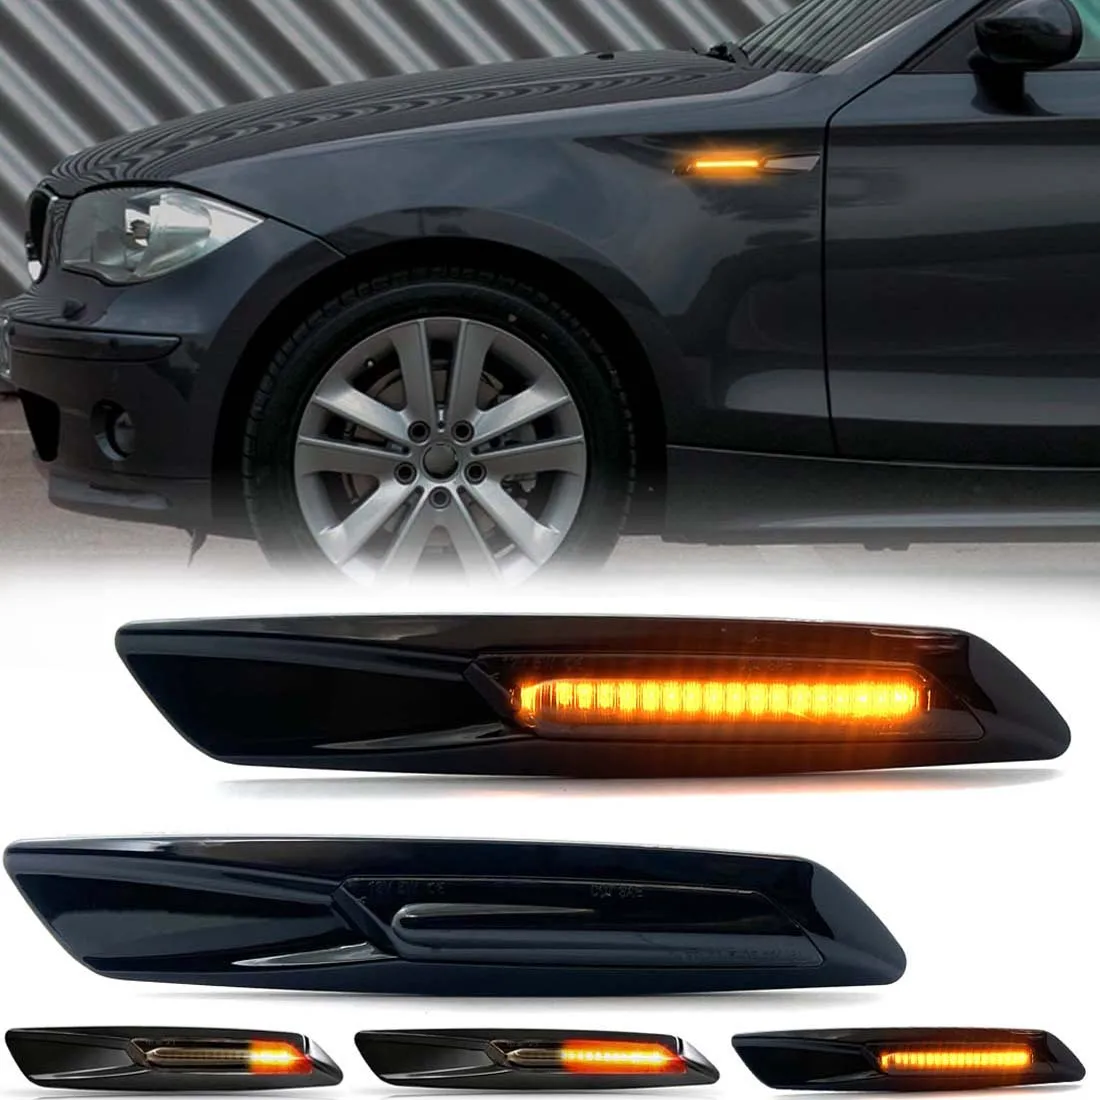 Scroll Dynamic LED Side Marker Lights For BMW E60 E90 E91 E92 E93 E87 E46 E61 328i 330i 328xi F30 1 3 5 Series Turn Signal Light